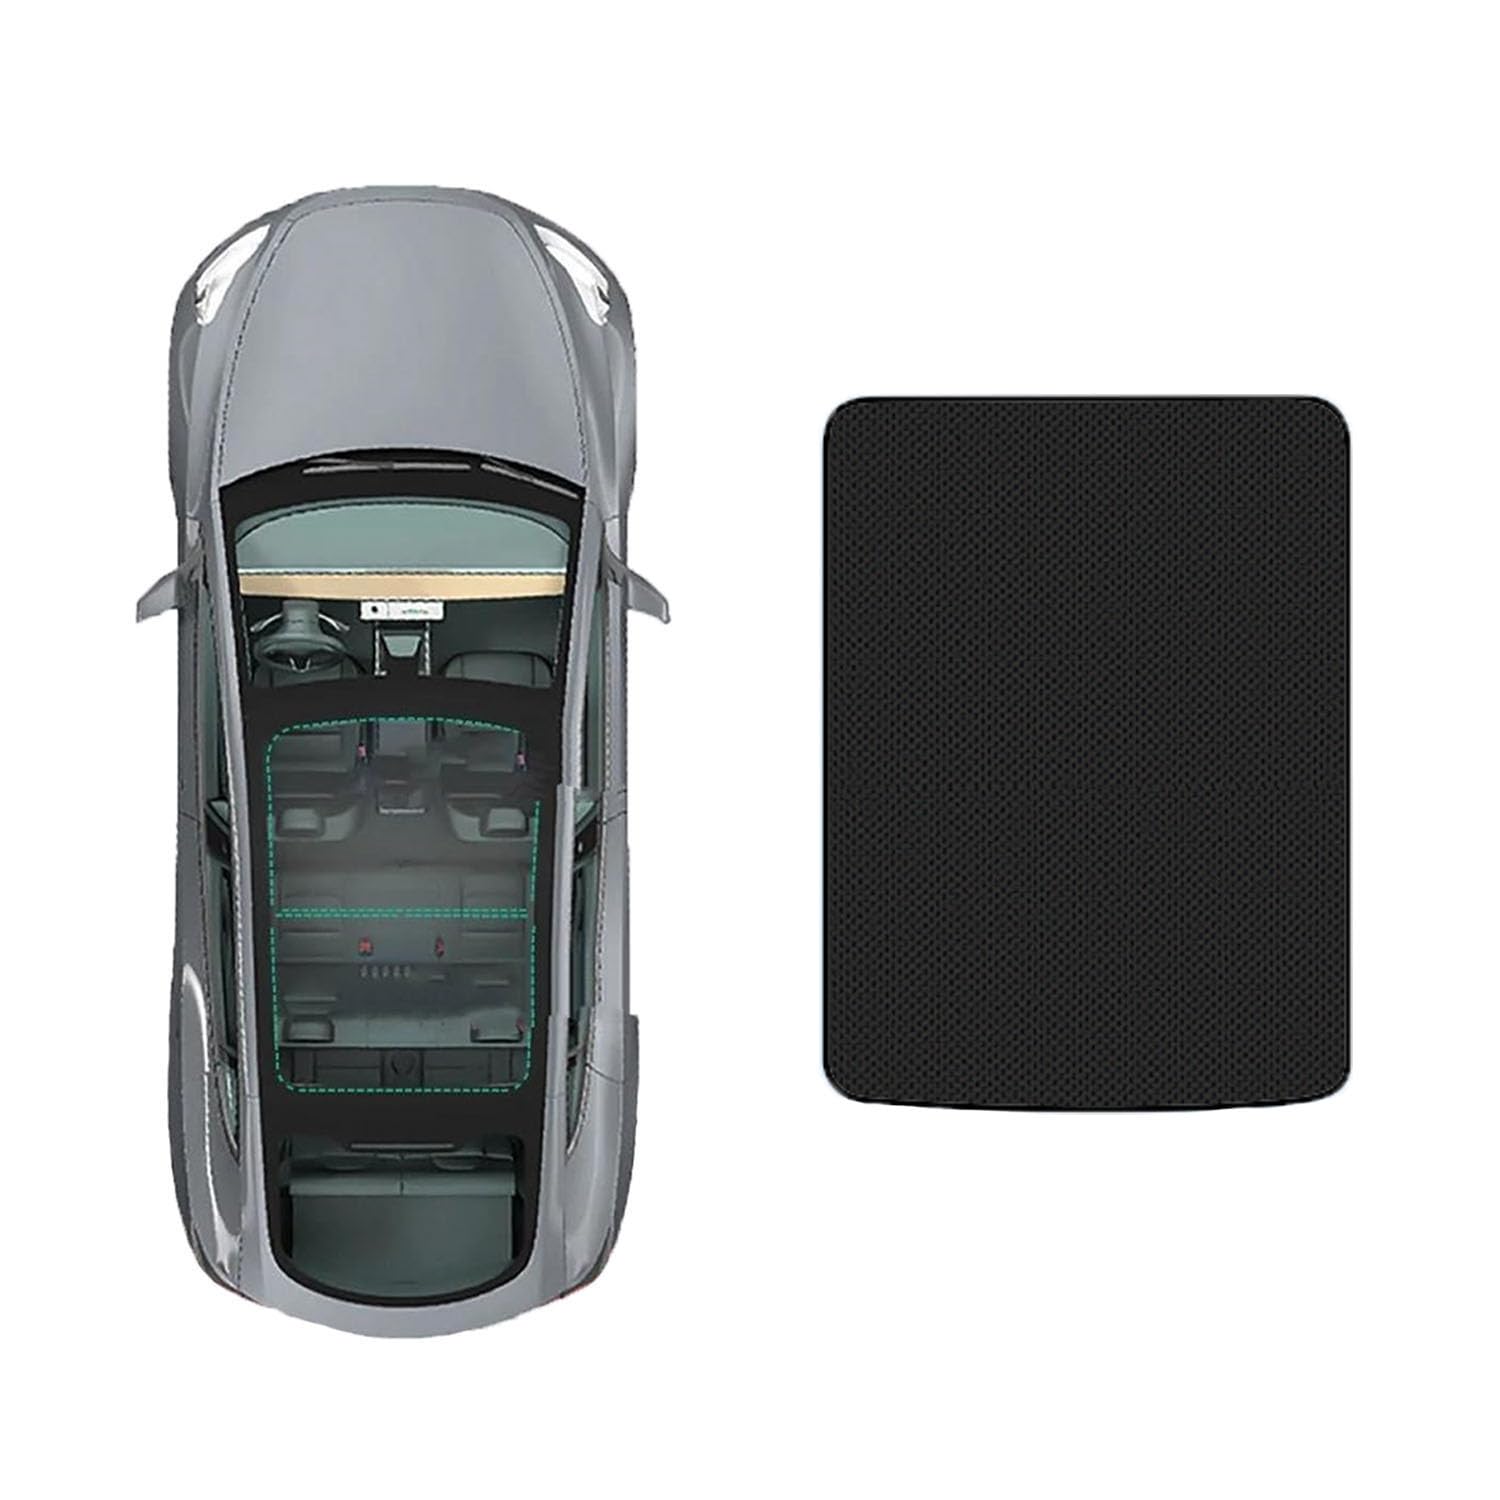 Auto-Schiebedach-Beschattung Für Audi A3 2014-,Glas-Schiebedach-Sonnenschutz blockiert effektiv schädliche UV-Strahlen,C-Black Regular Style von FENVY